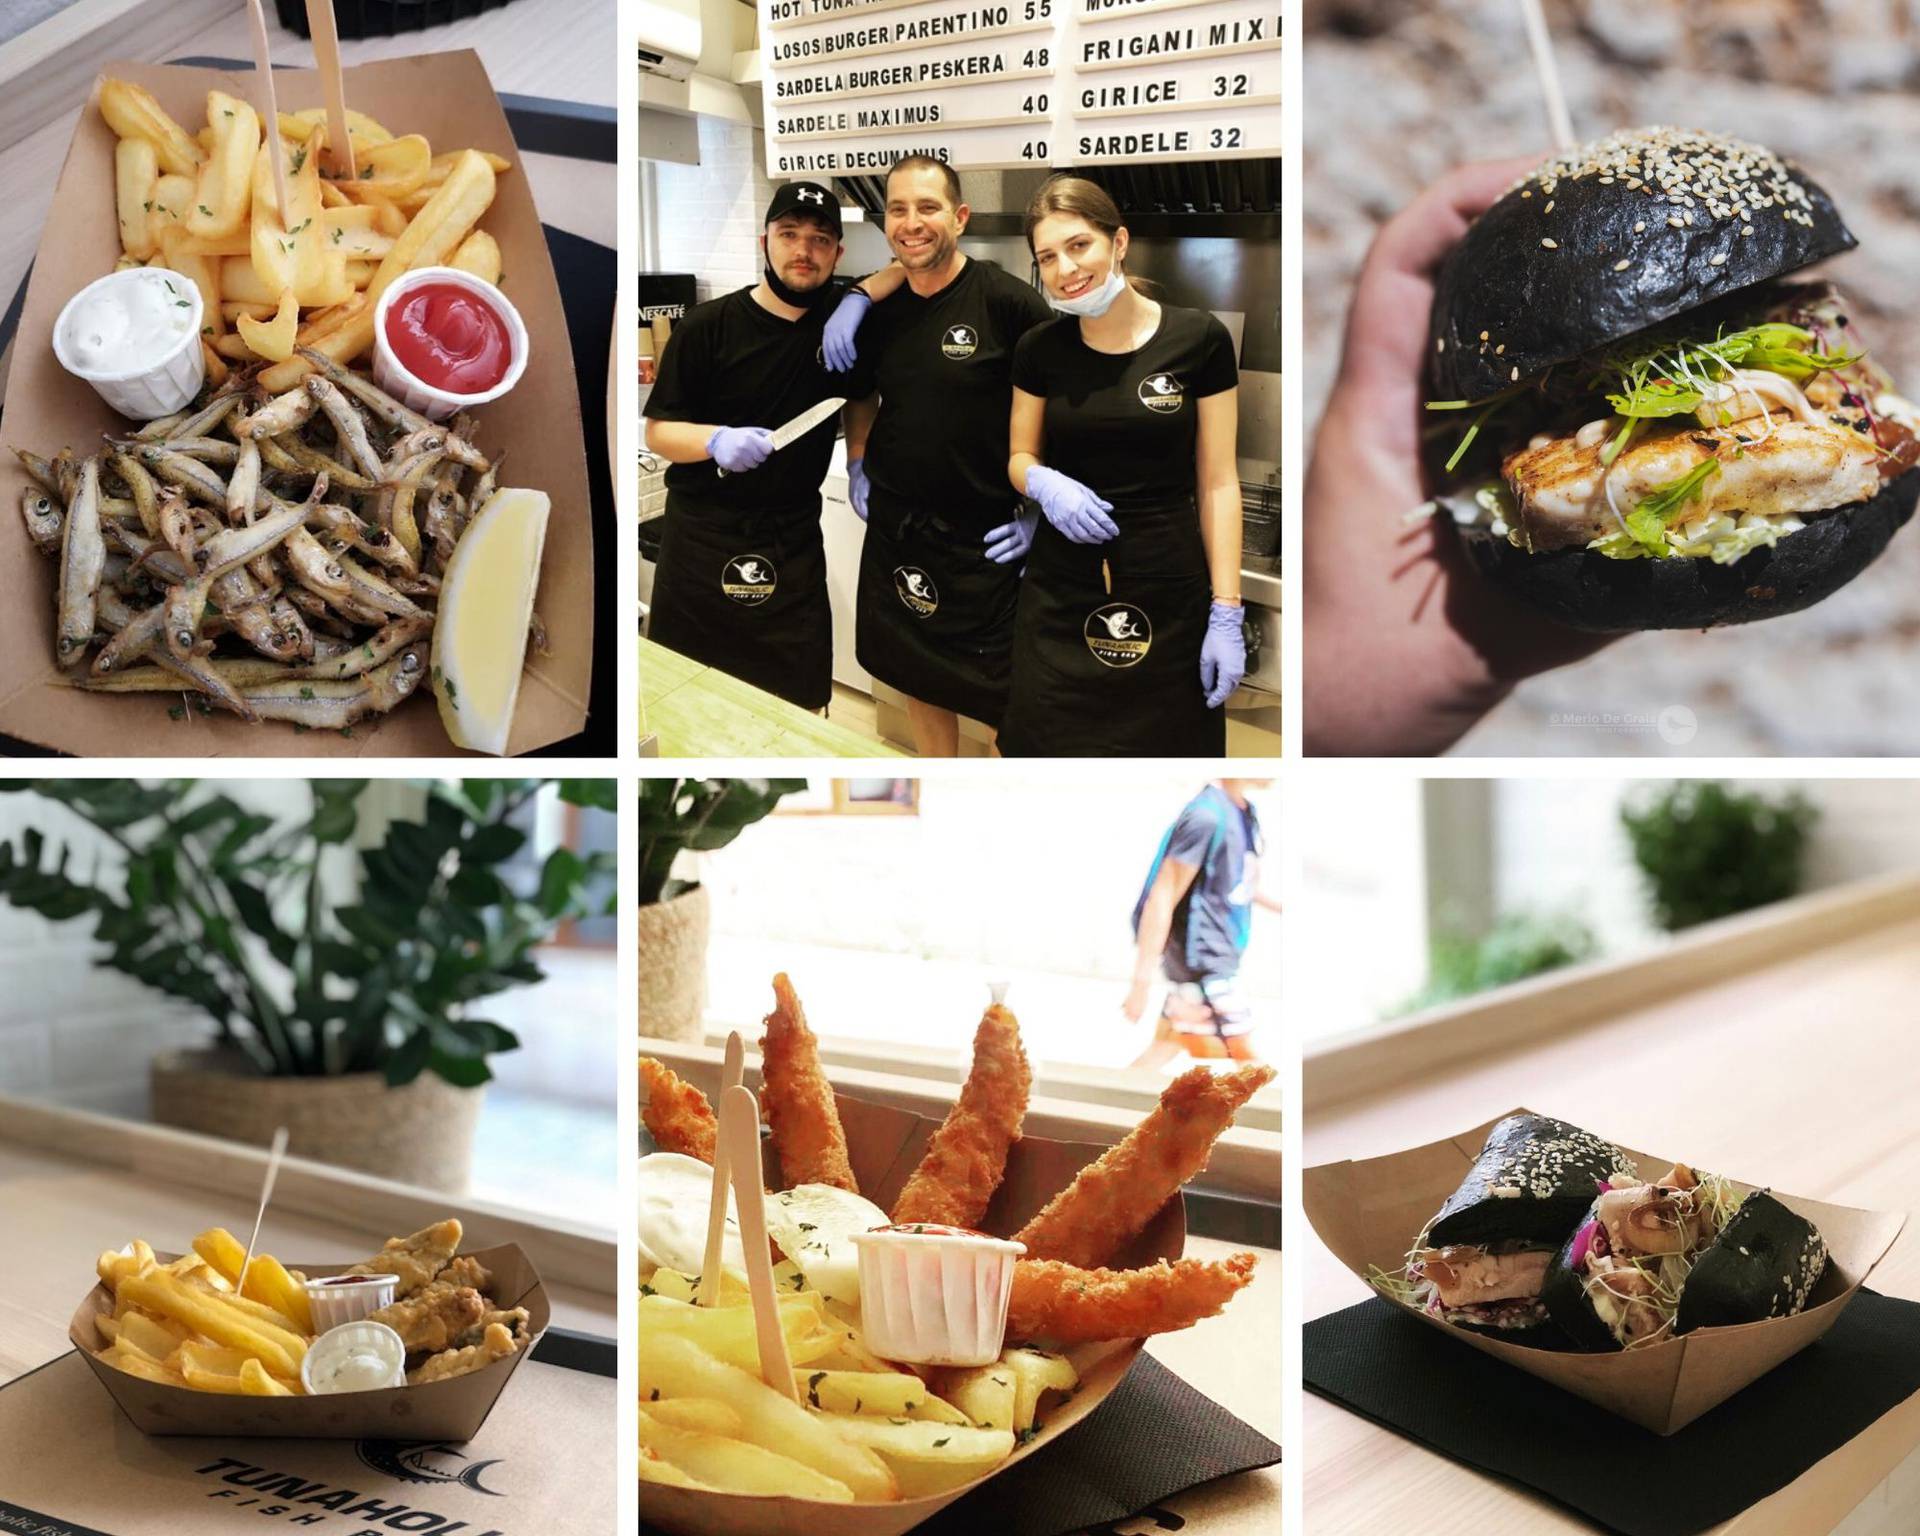 Tunaholic je novi fish bar u Poreču: Omastite brk burgerom od morskog psa i friganim giricama